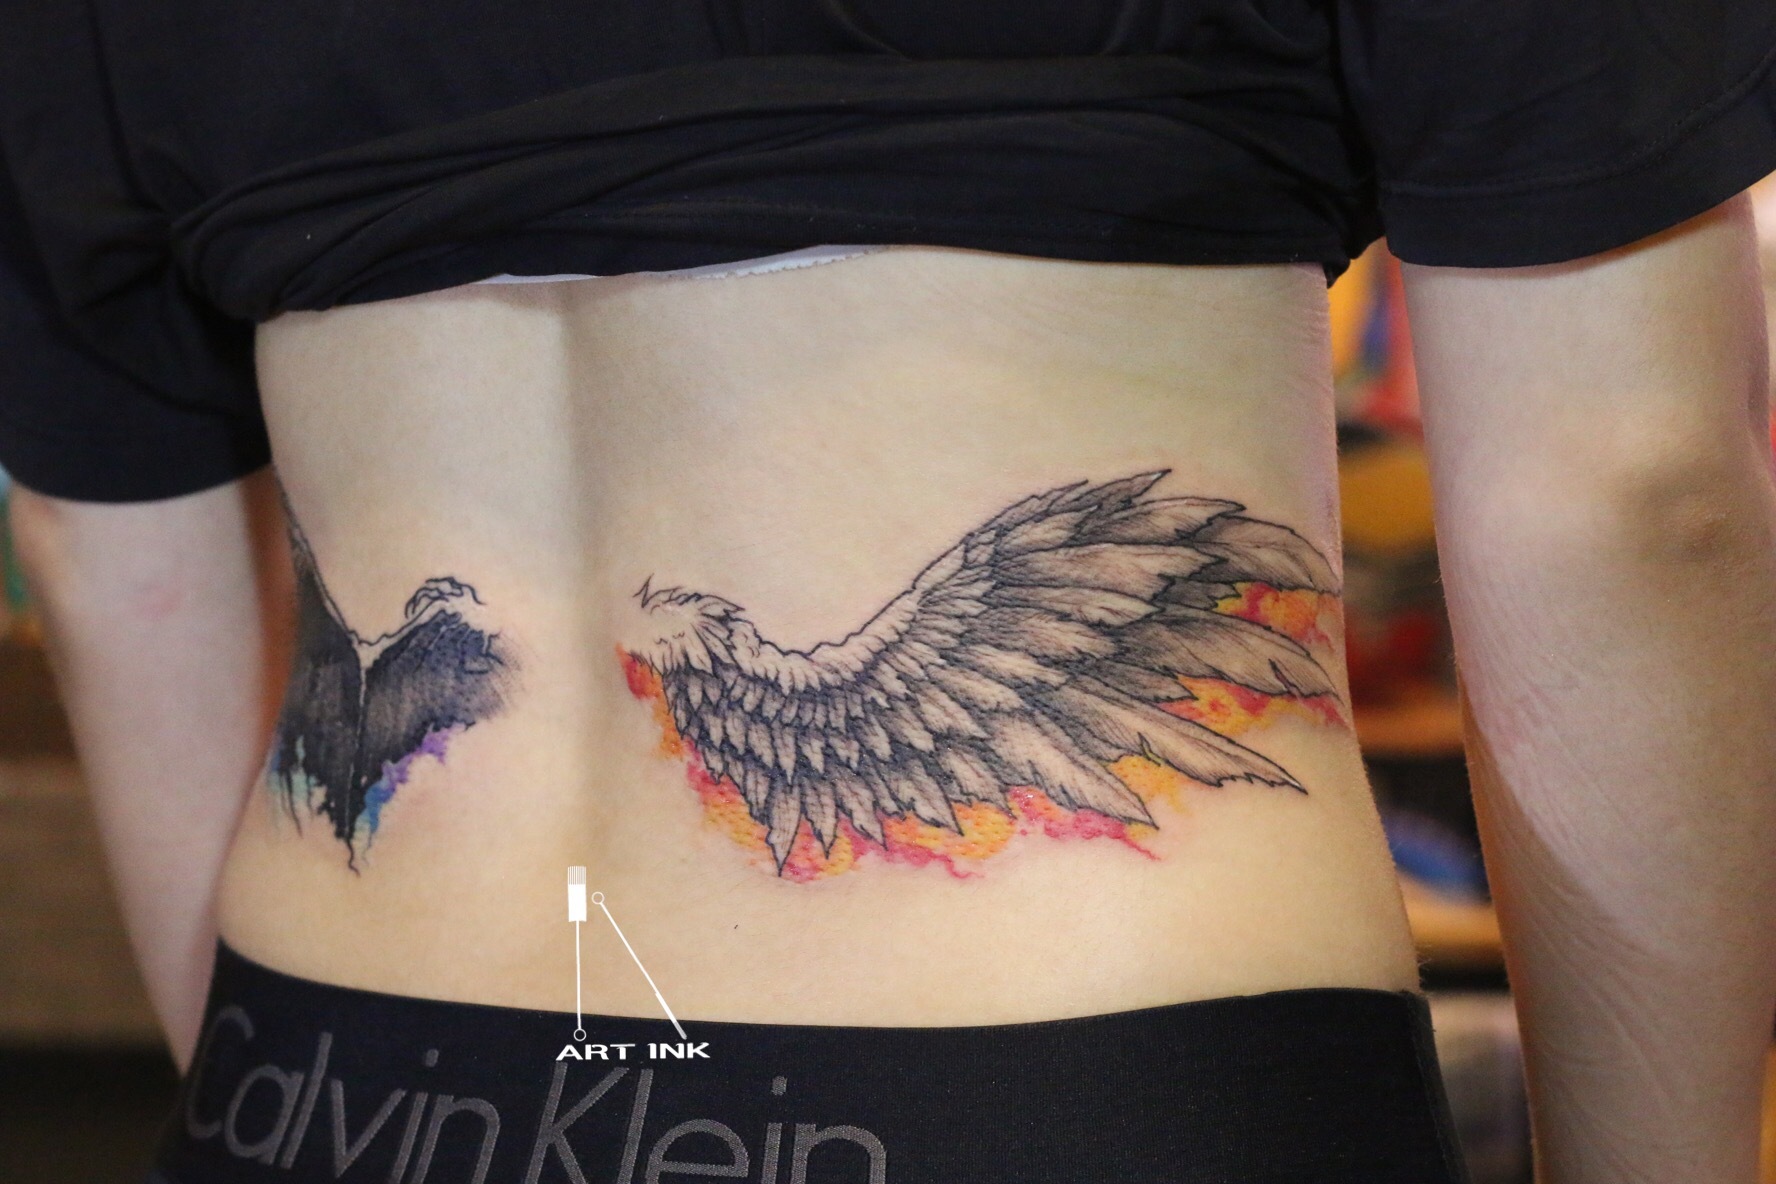 天使翅膀纹身手稿图案由纹身馆提供